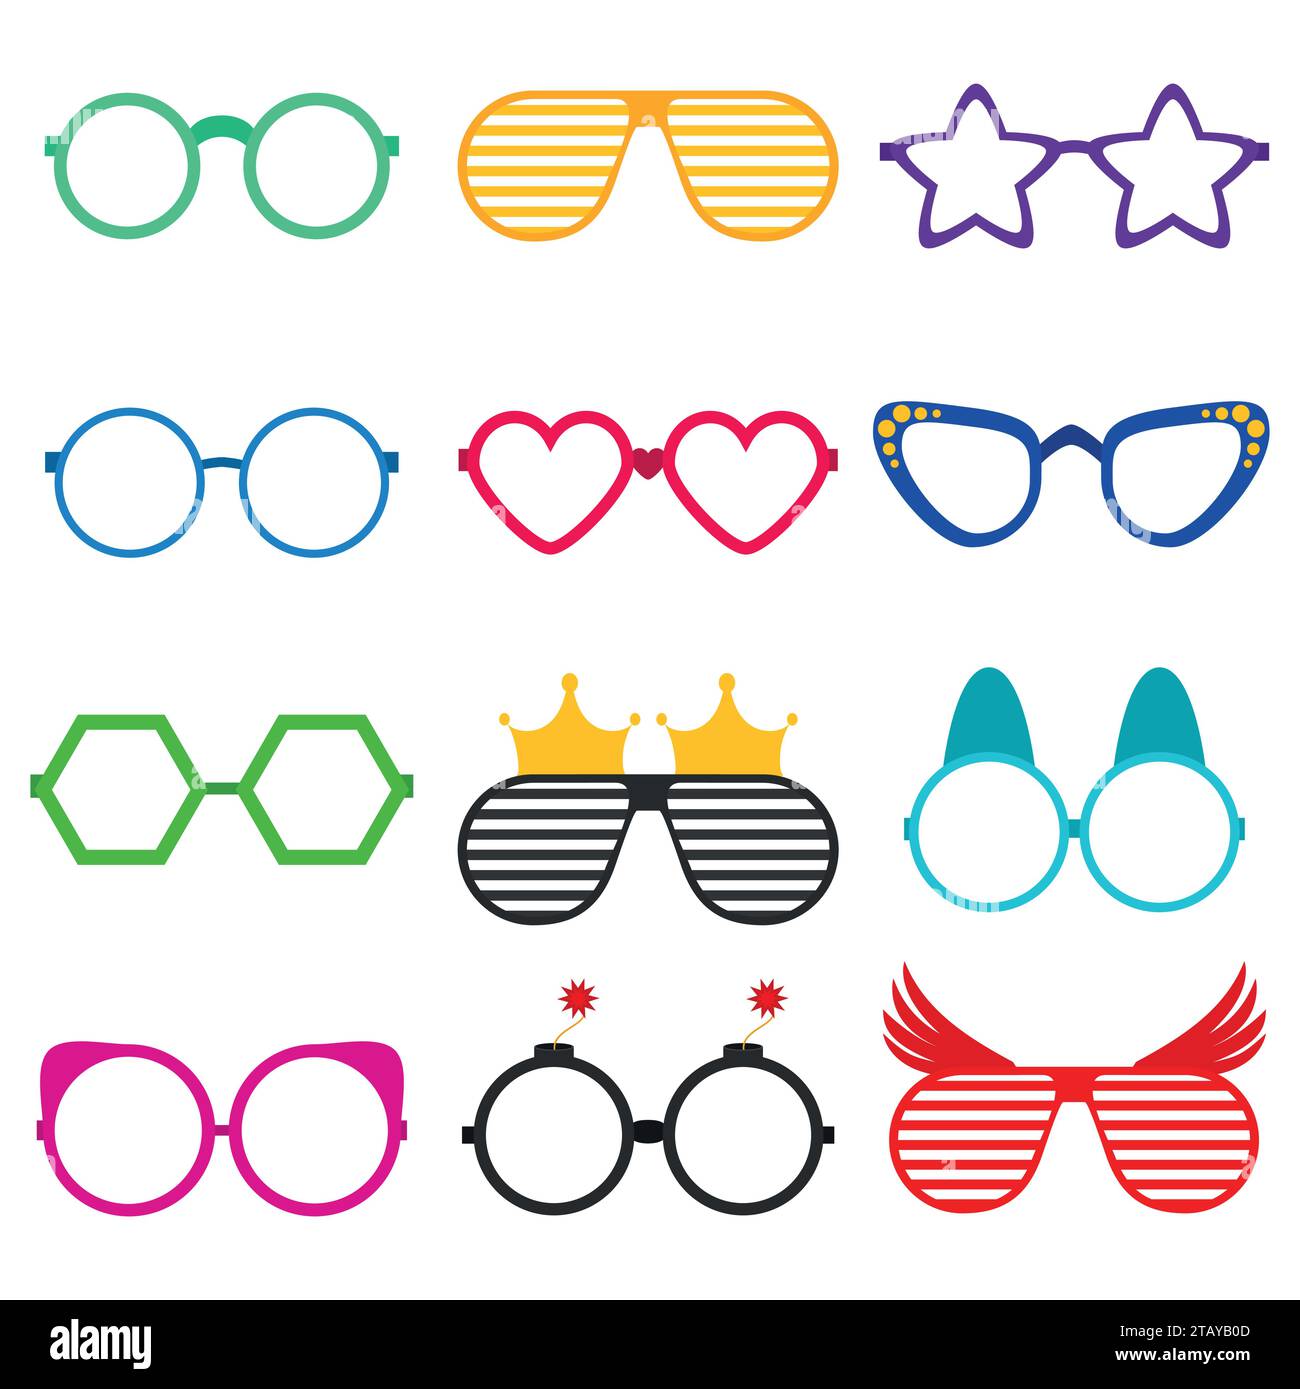 Lunettes de soleil ou lunettes de vue Vector party en forme drôle. Accessoires pour lunettes optiques de mode hipsters vue de la vue. Icône de lunettes de soleil colorées Illustration de Vecteur